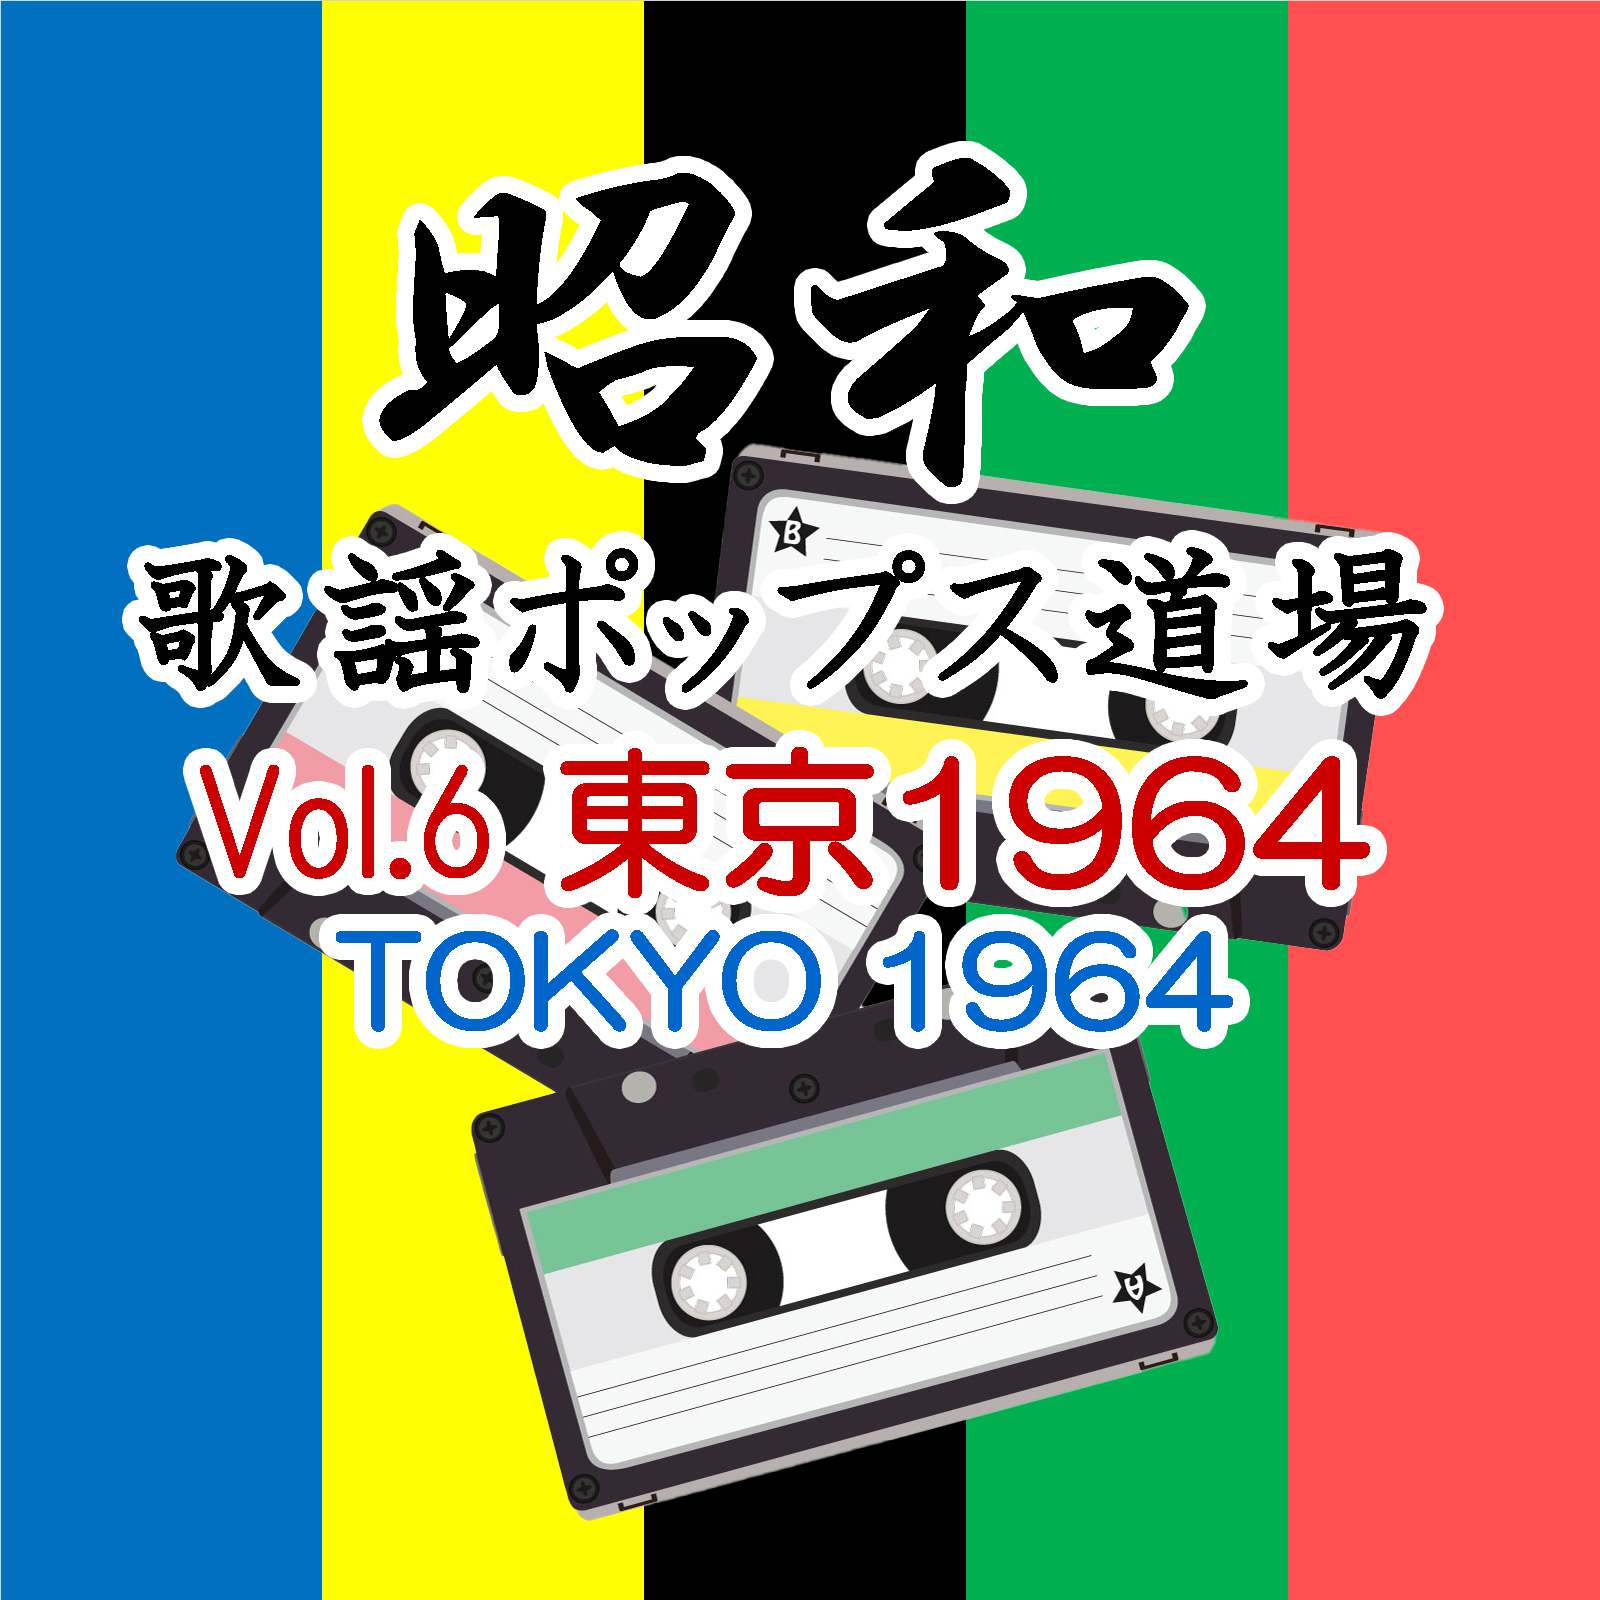 昭和歌謡ポップス道場 Vol.6 東京 1964（TOKYO 1964）